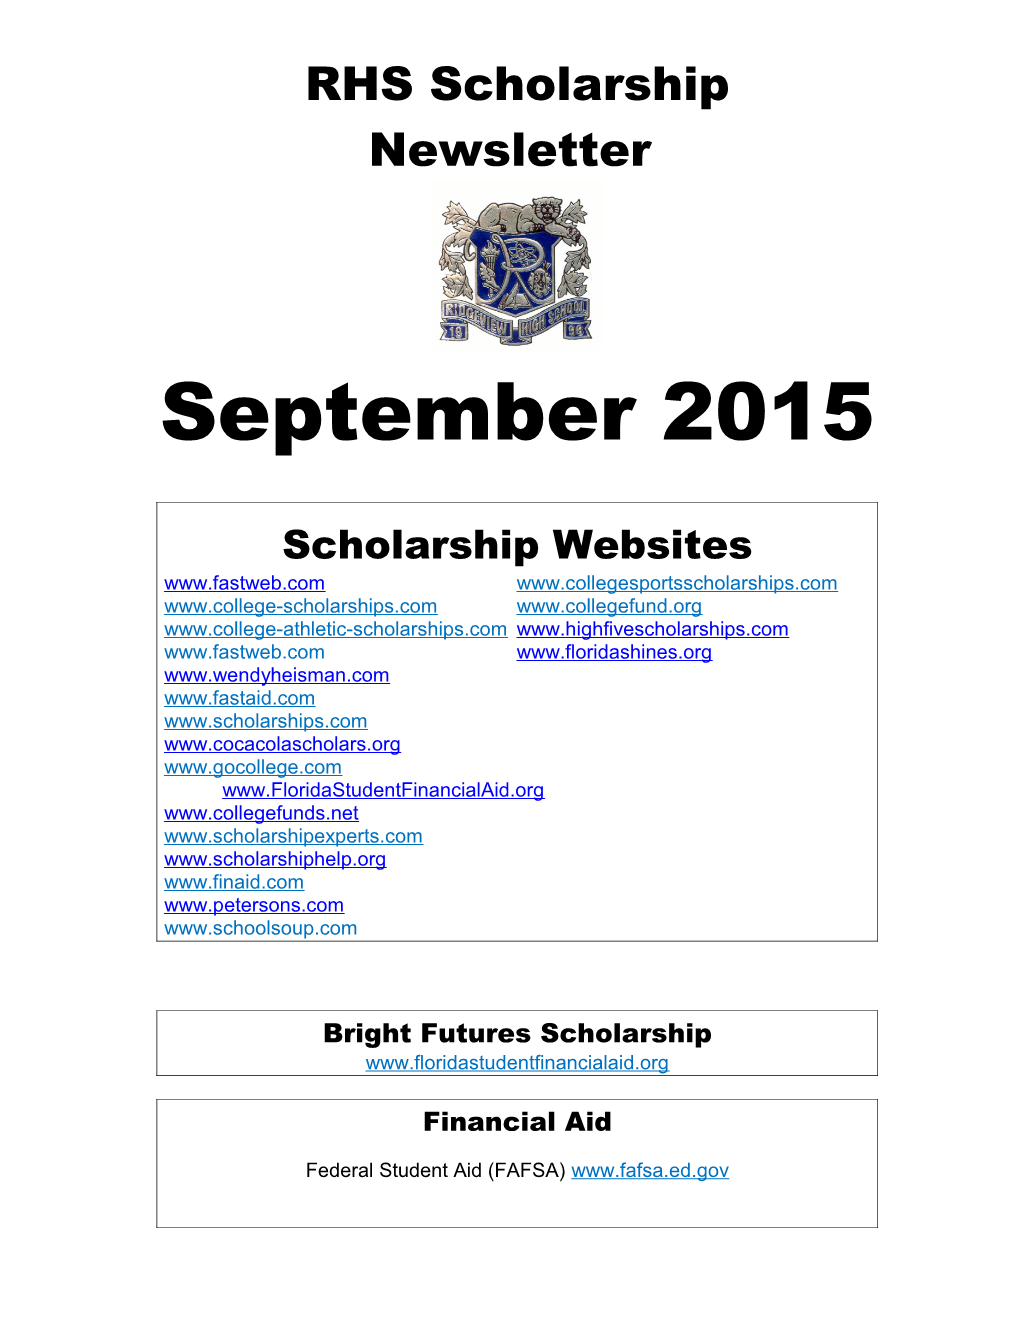 RHS Scholarship Newsletter s1